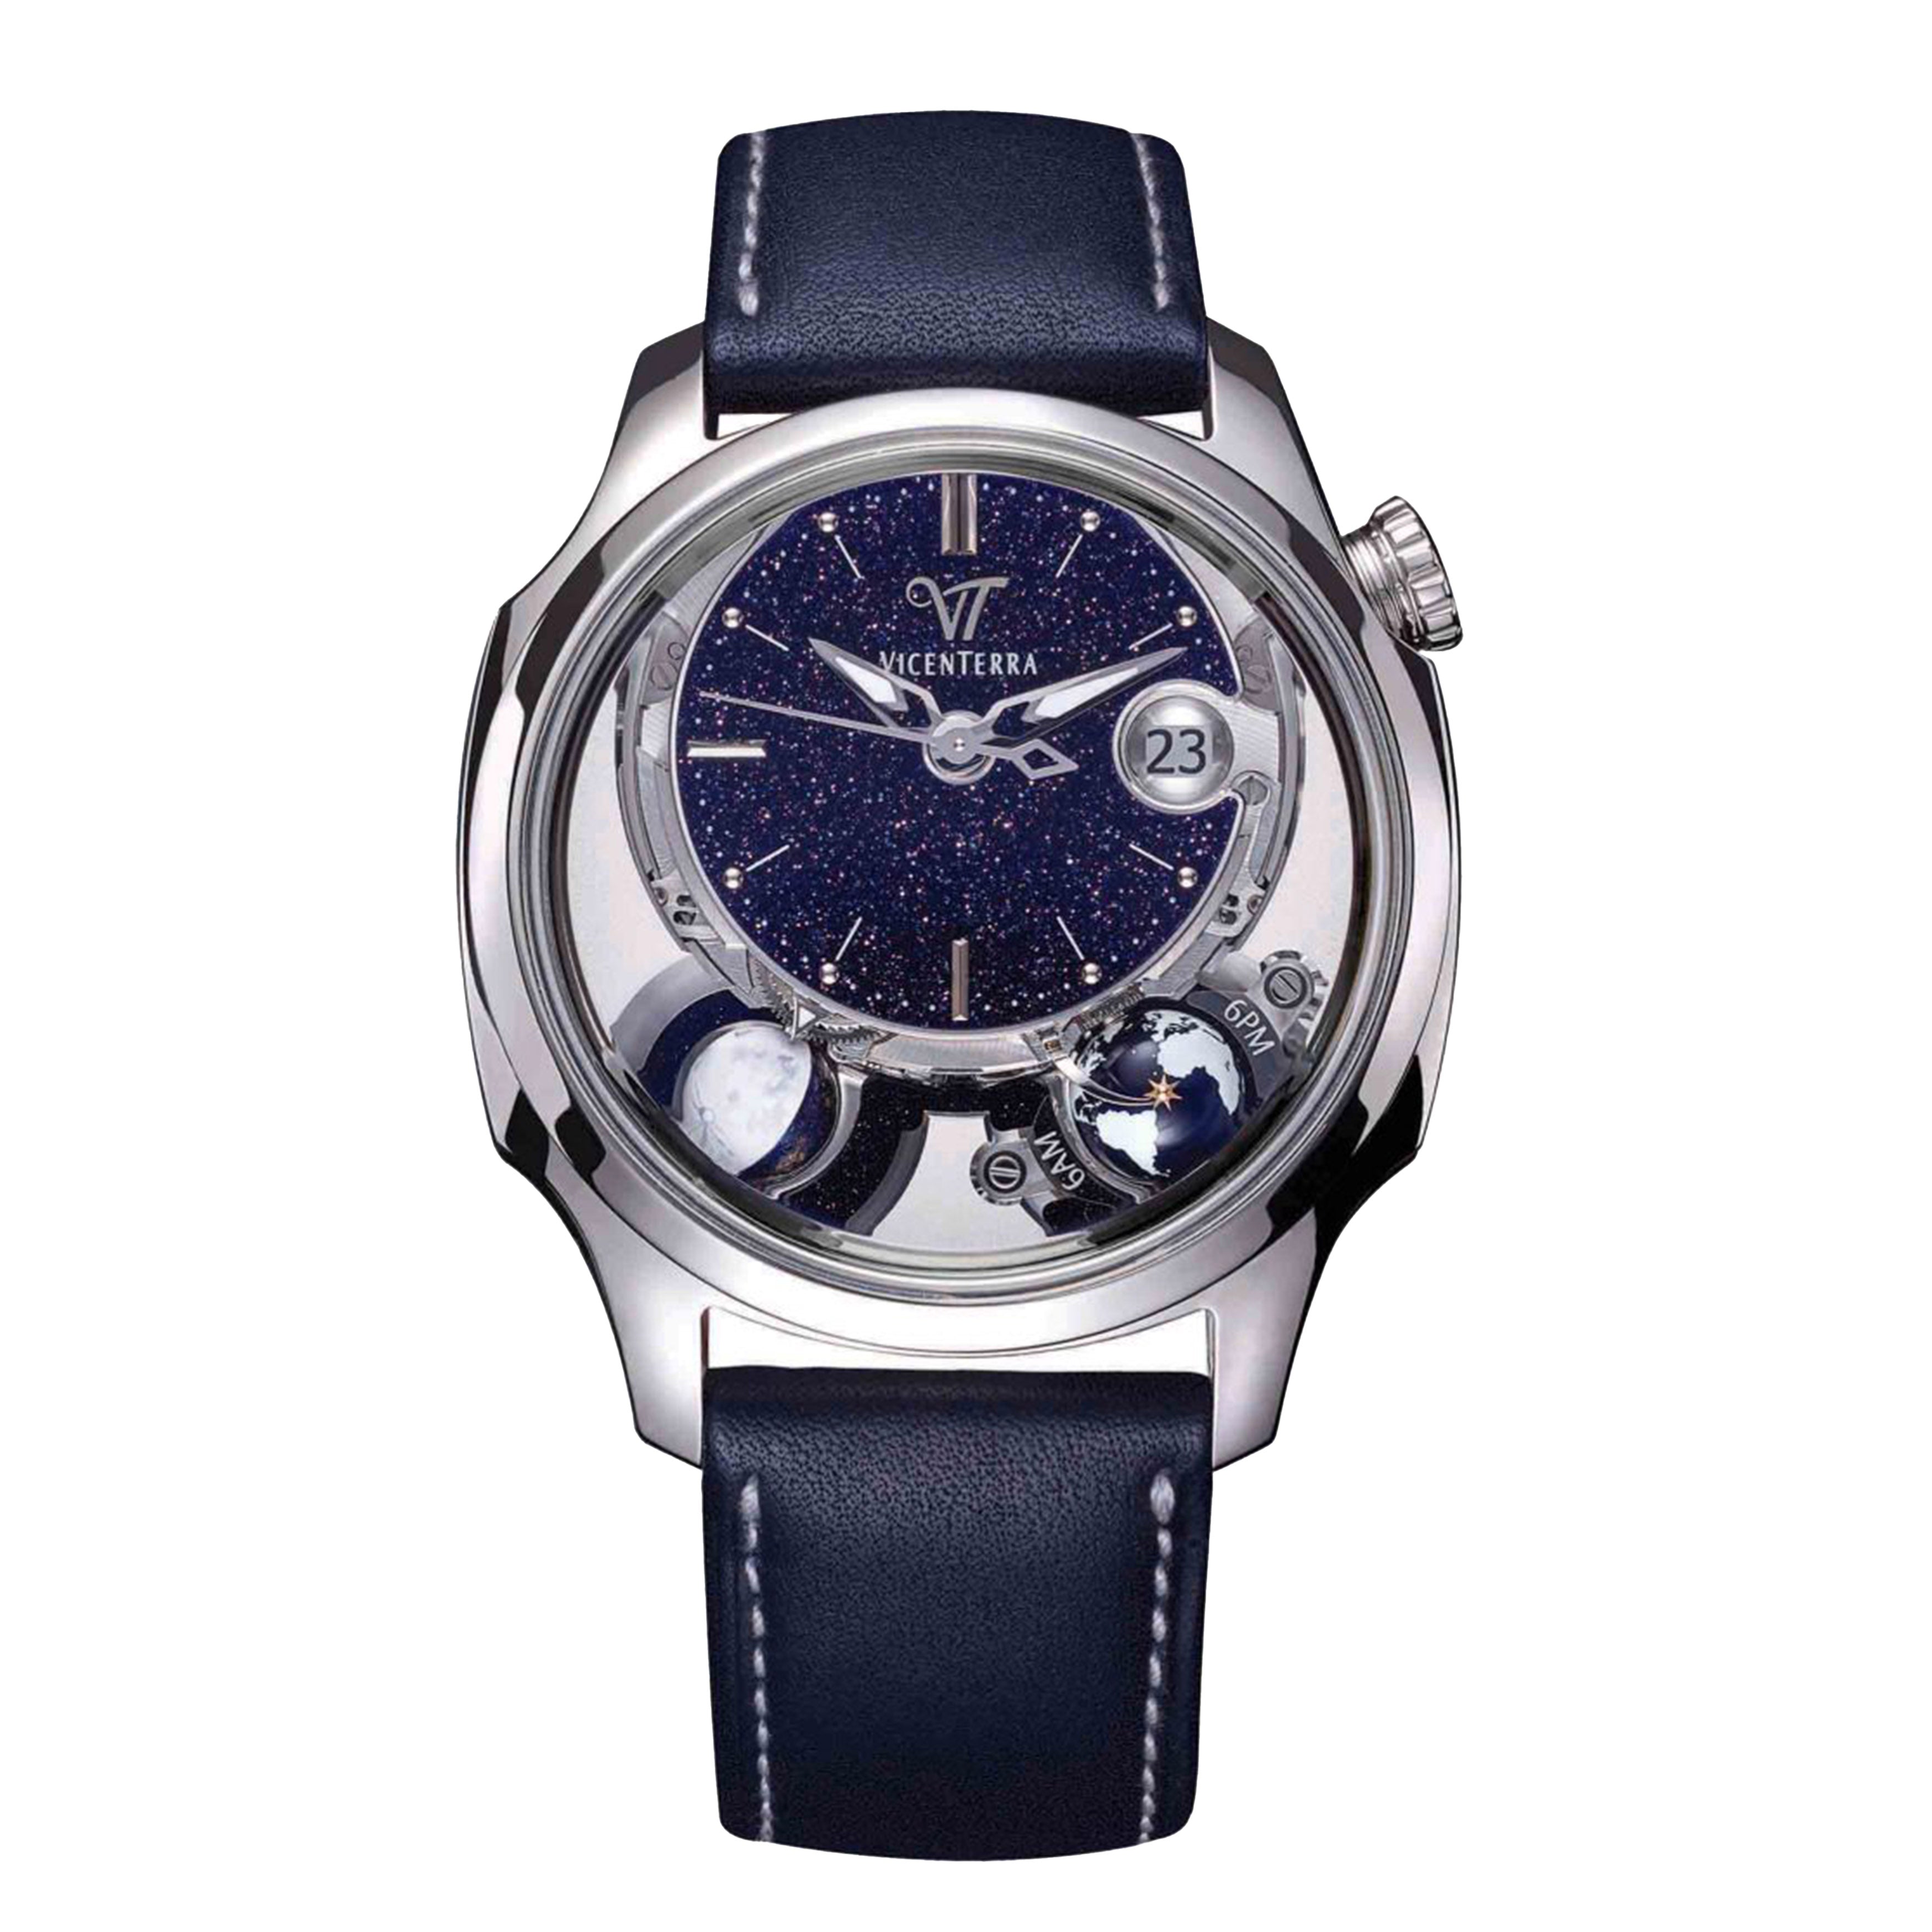 Vicenterra Astroluna T1 Aventurine Watch, 41.5mm Blue Aventurine Dial, VT.154.01.21